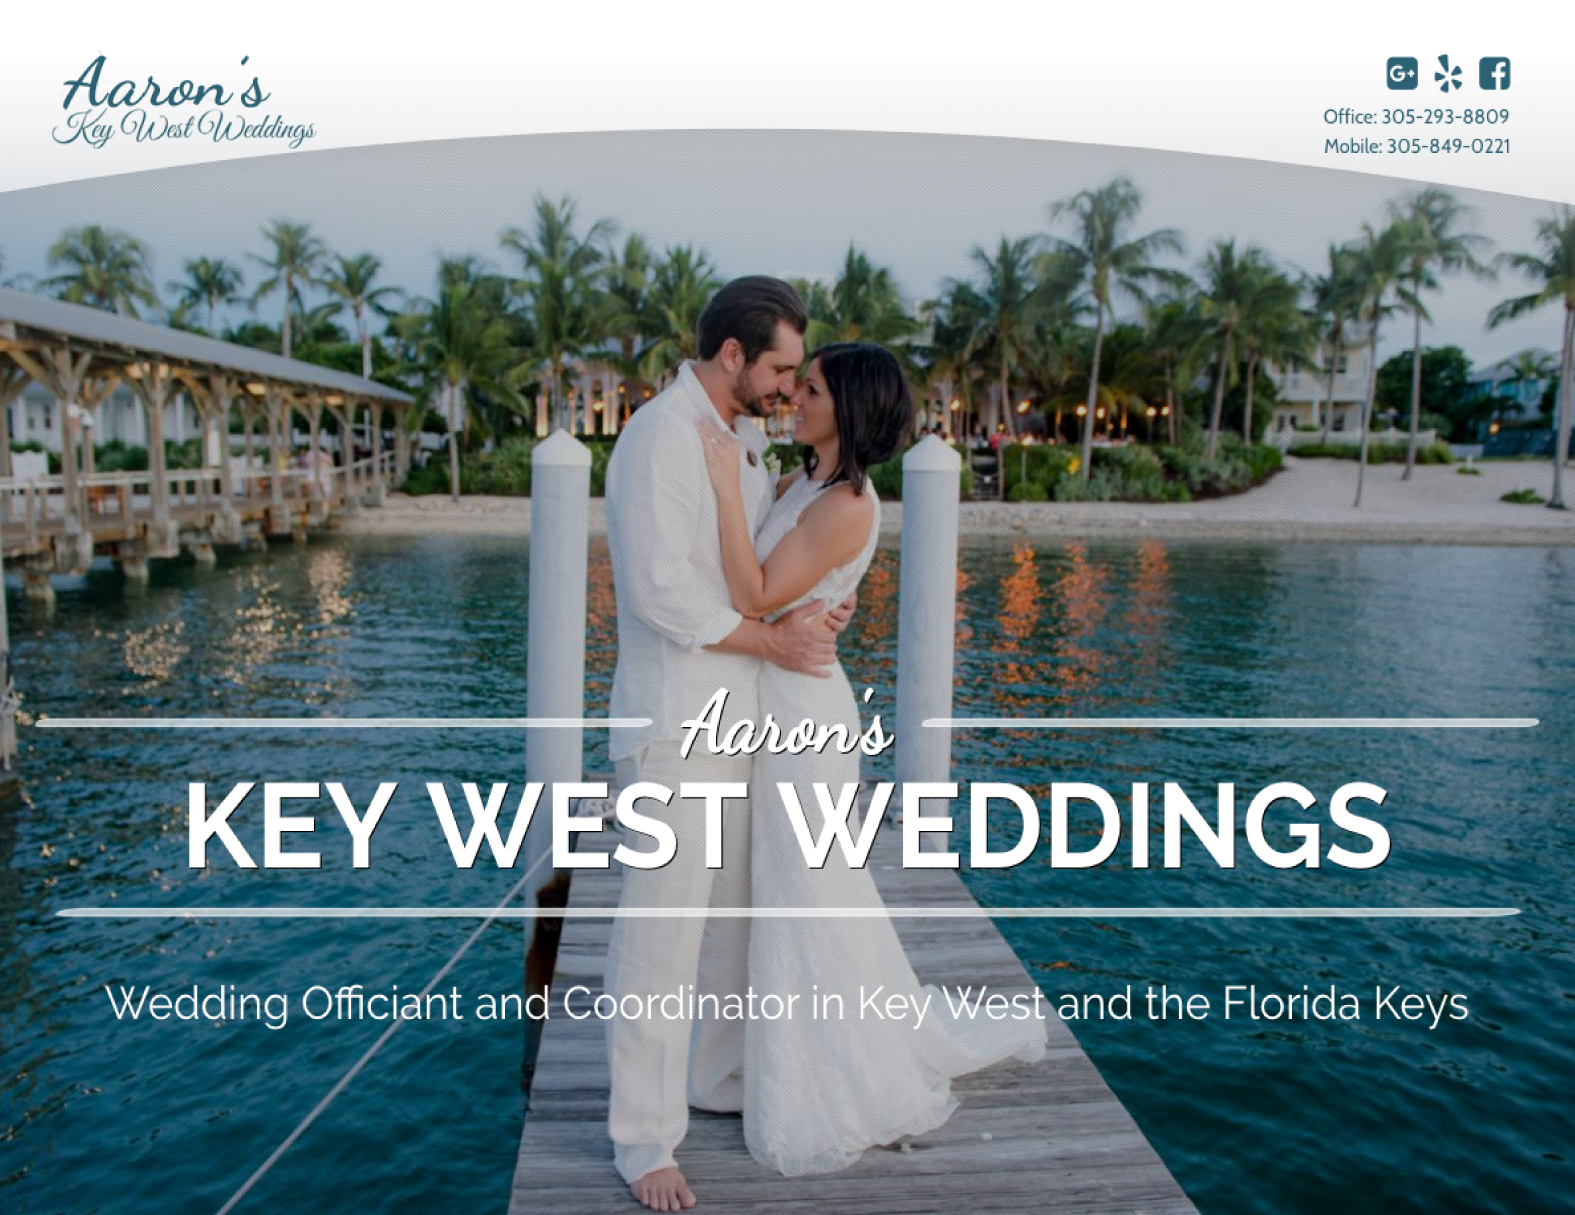 Aaron's Key West Weddings